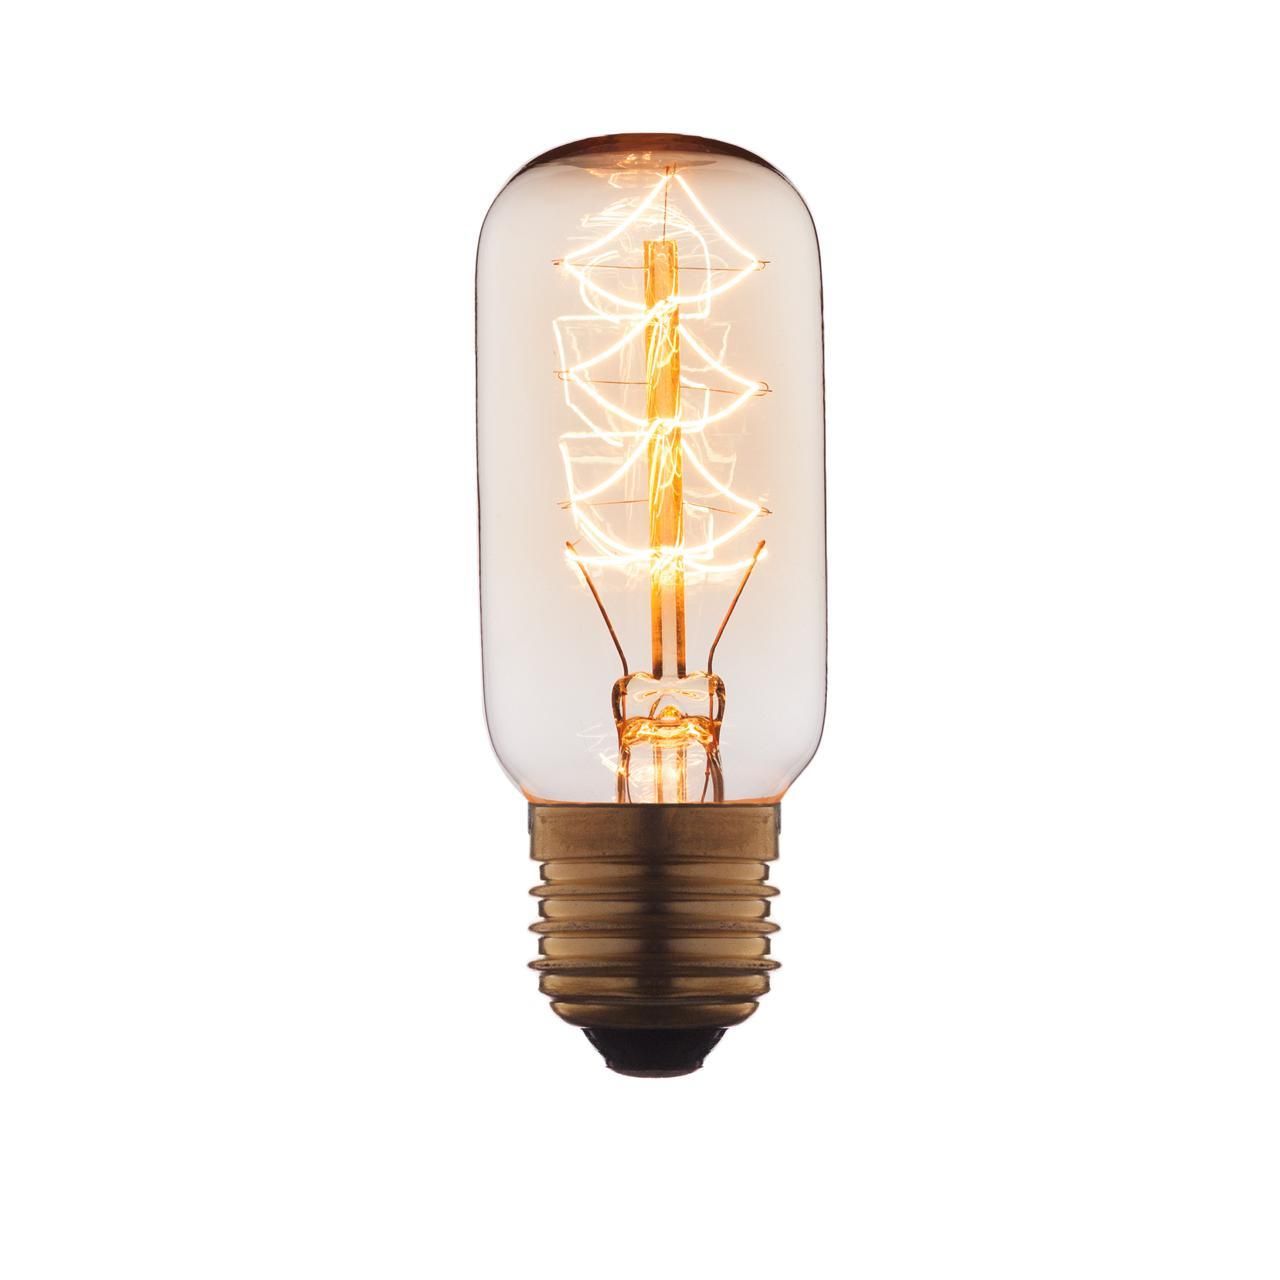 Ретро лампа Эдисона (Мини цилиндр) E27 40W 220V Edison Bulb